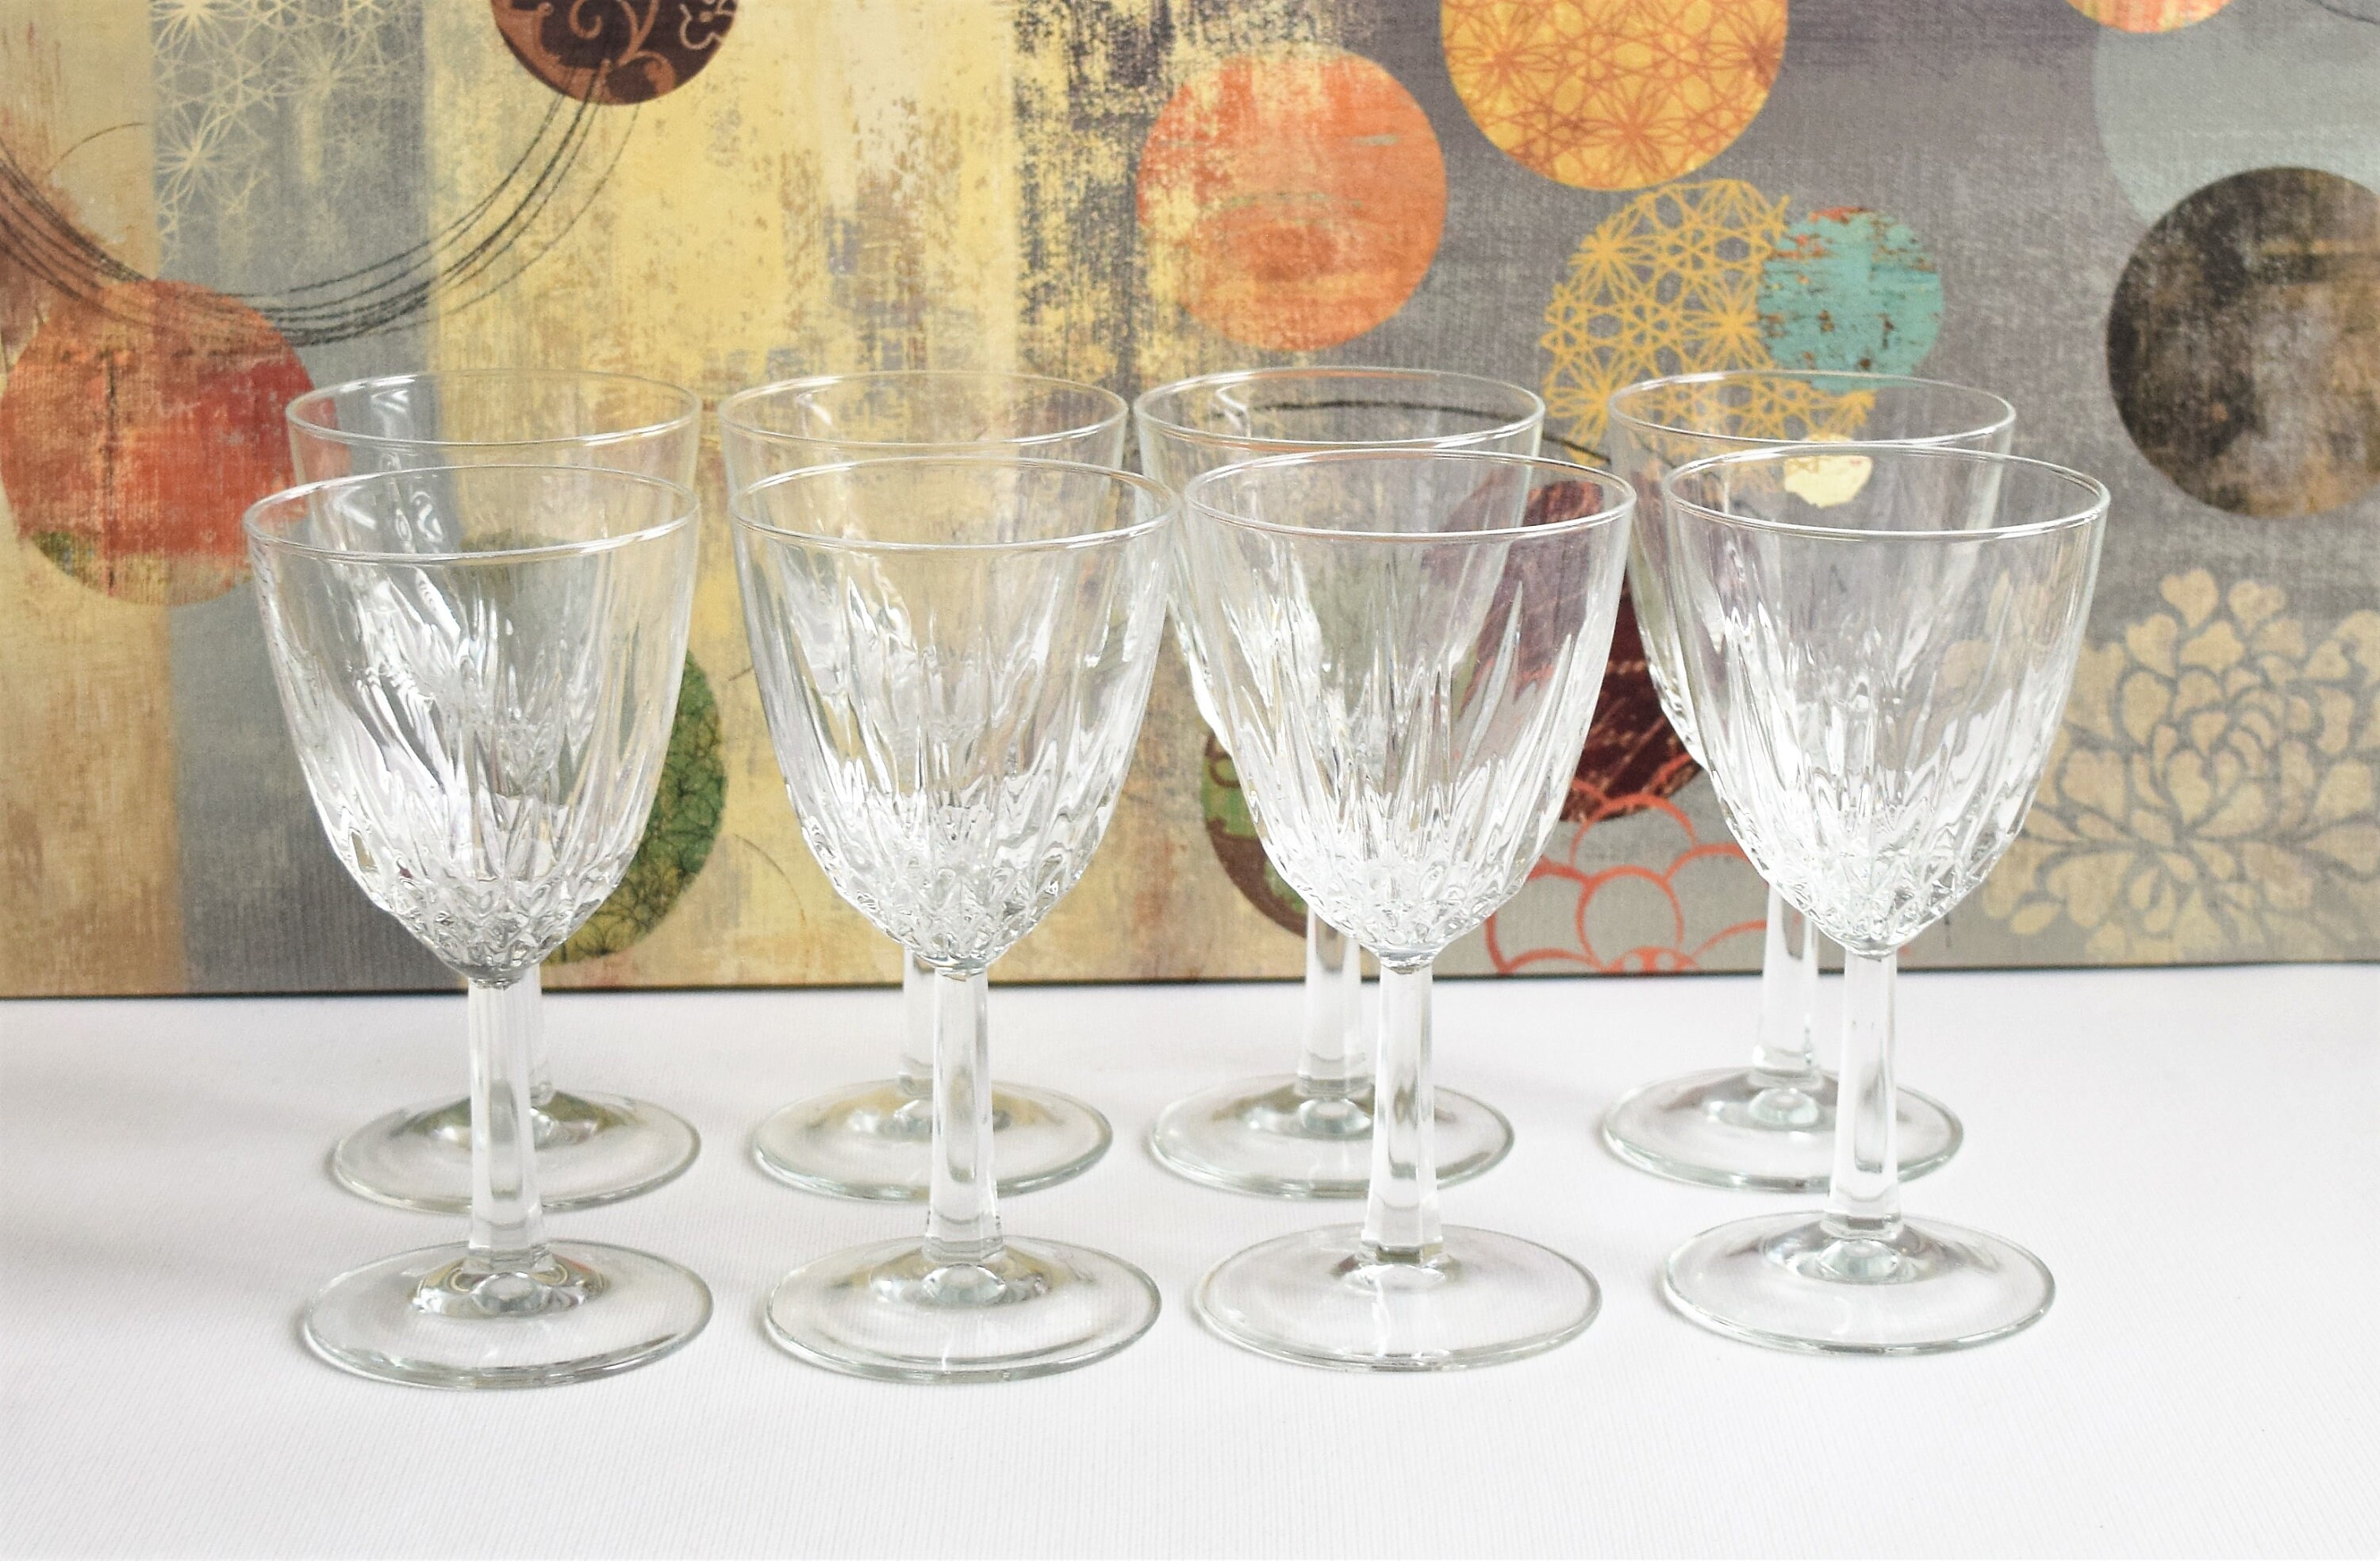 3 Pack Wine Glasses Goblets, 8.5/6.8 Oz Vintage Water Glasses